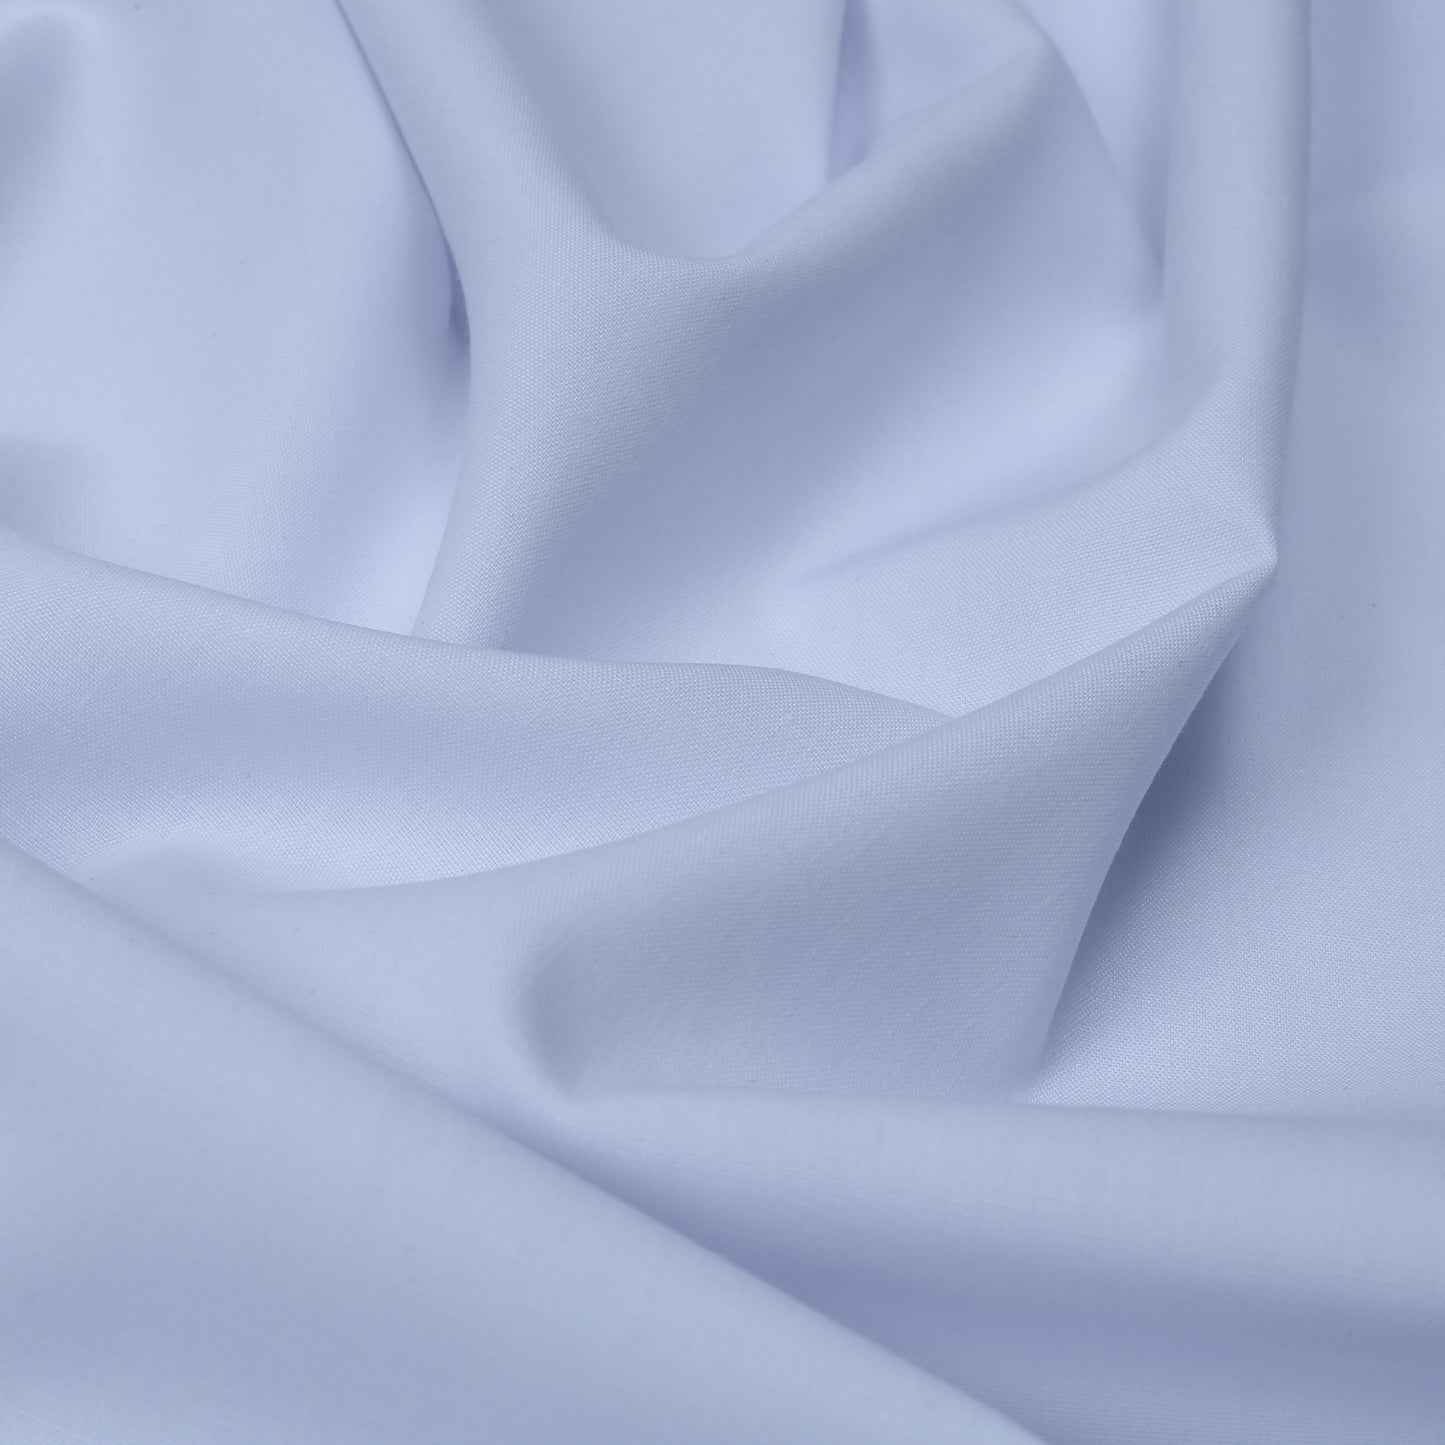 Polar White Wash & Wear - Classic Elegance